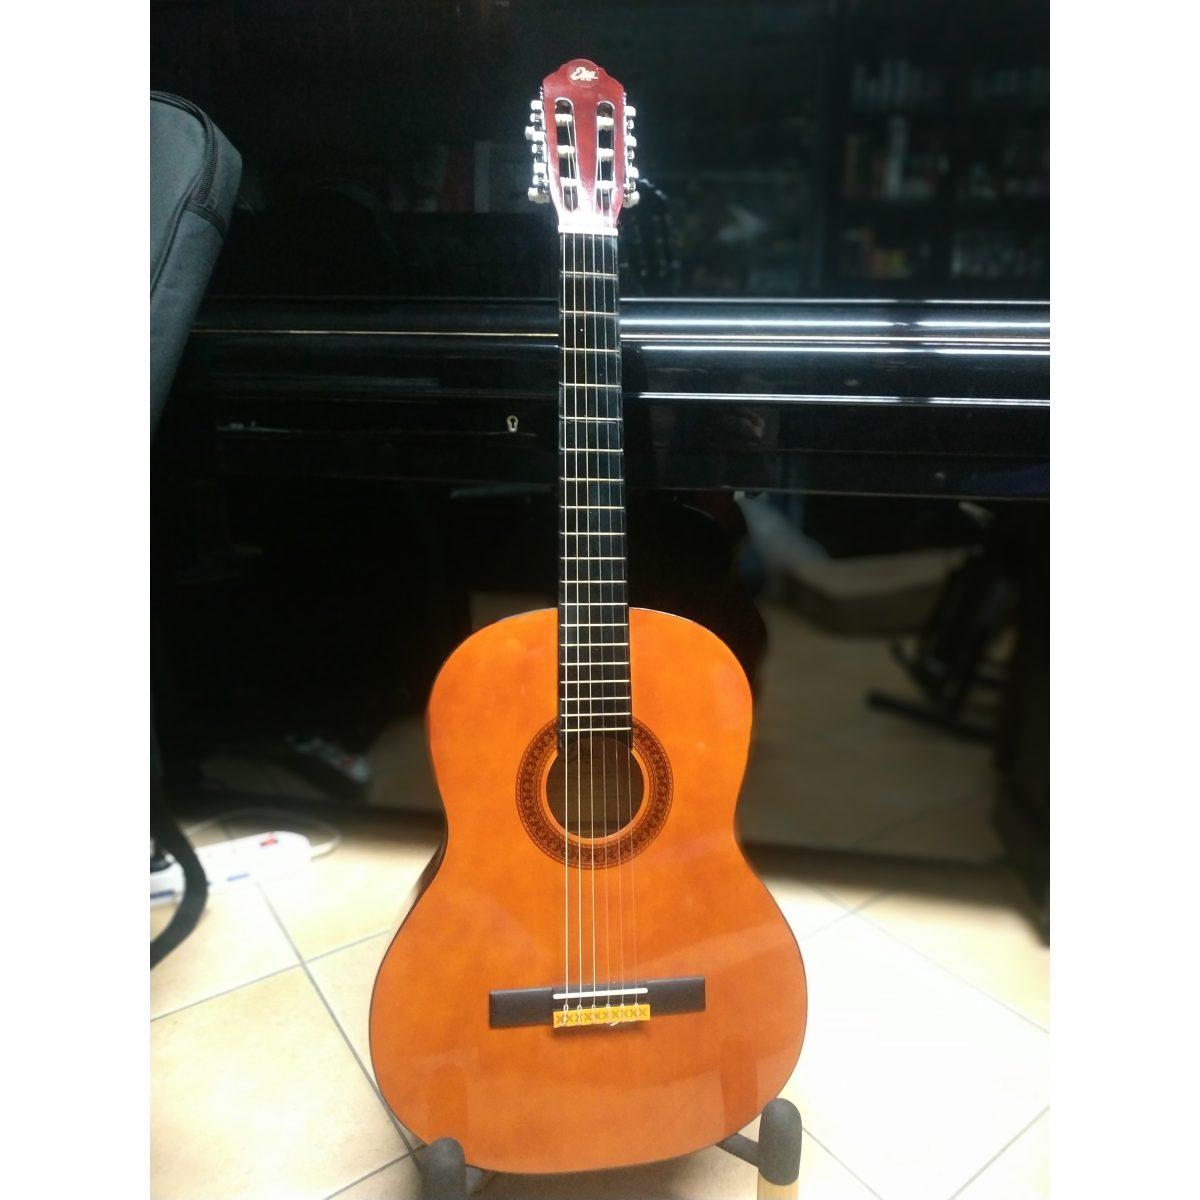 Eko CS10 kit chitarra classica natural 4/4 con borsa plettri e accordatore a fischietto